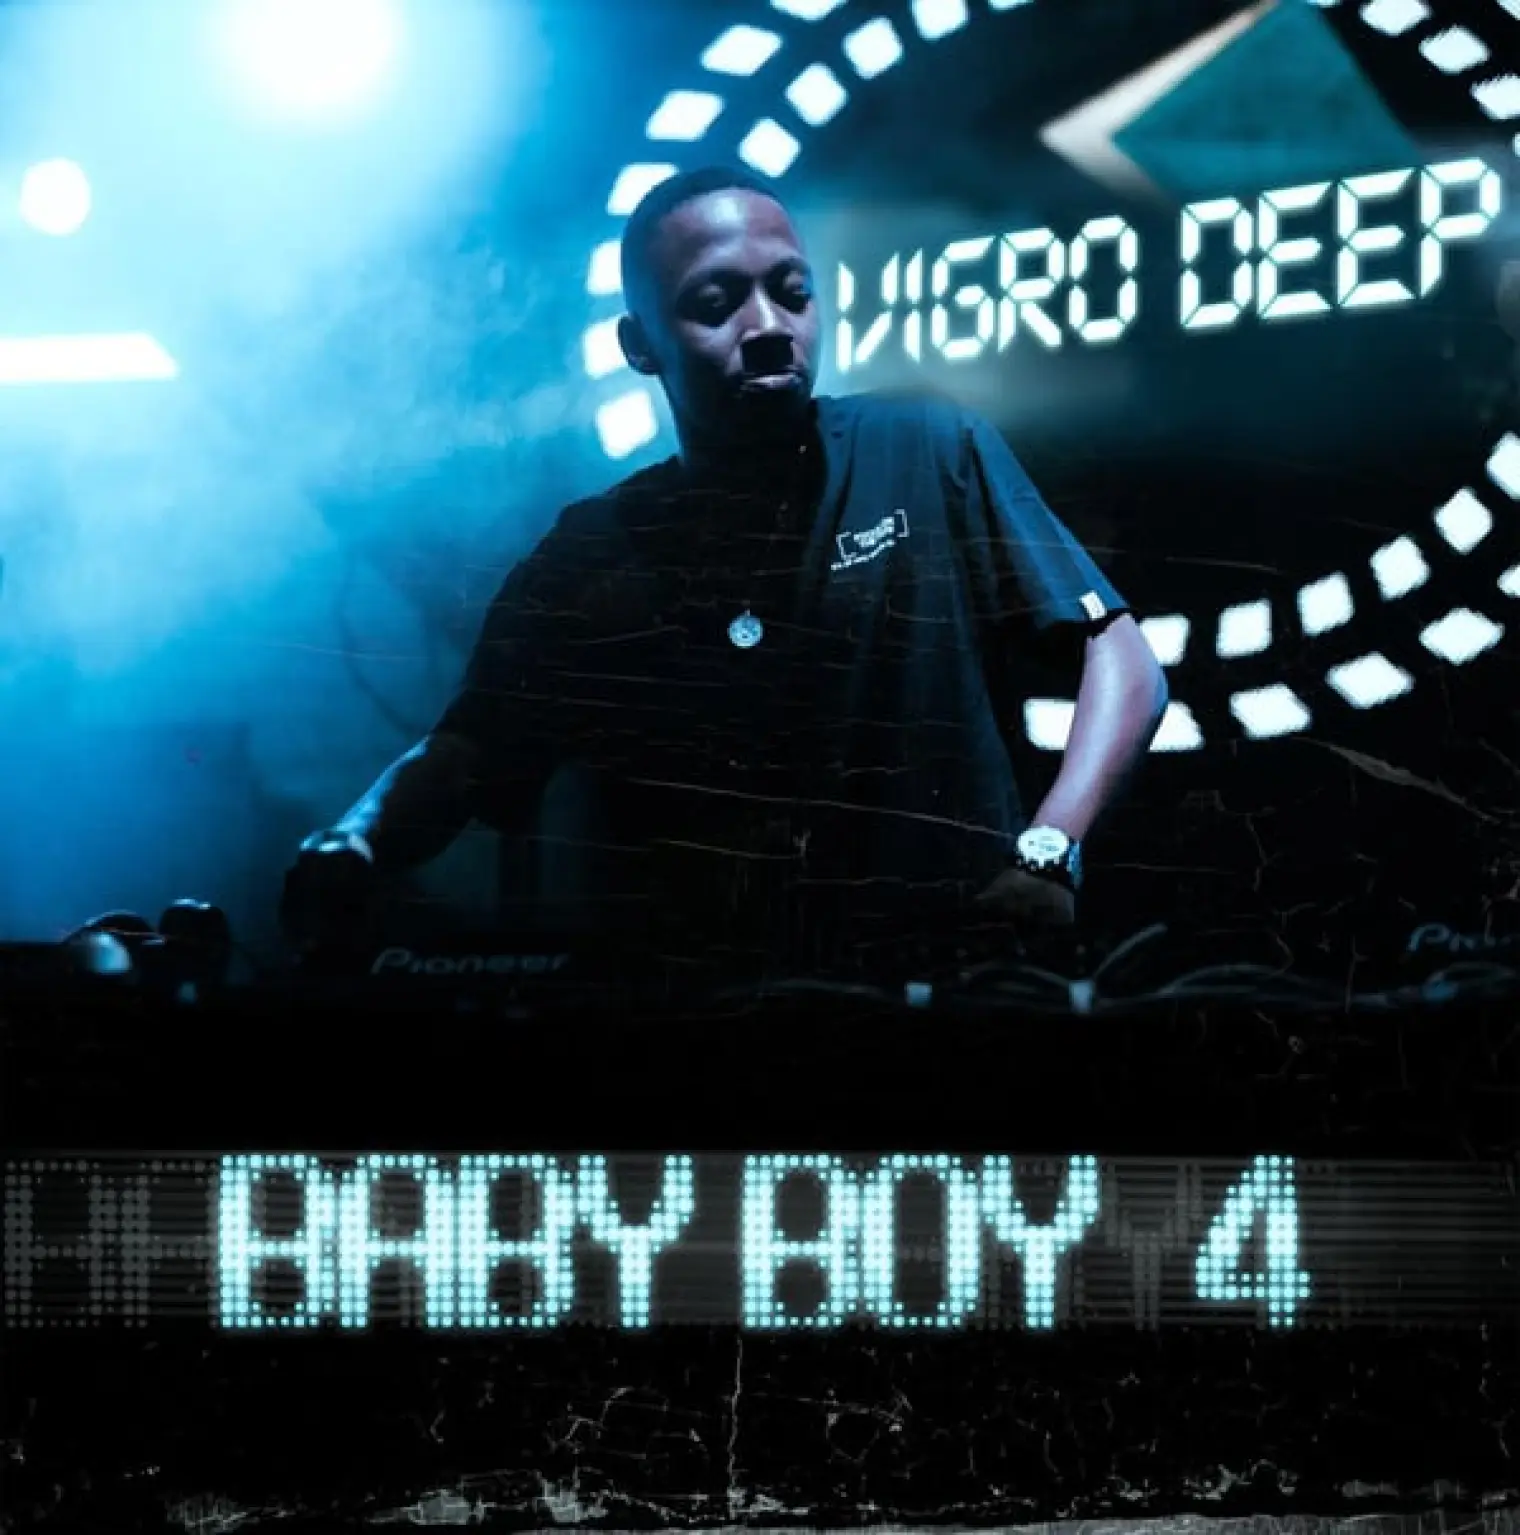 Baby Boy 4 -  Vigro Deep 